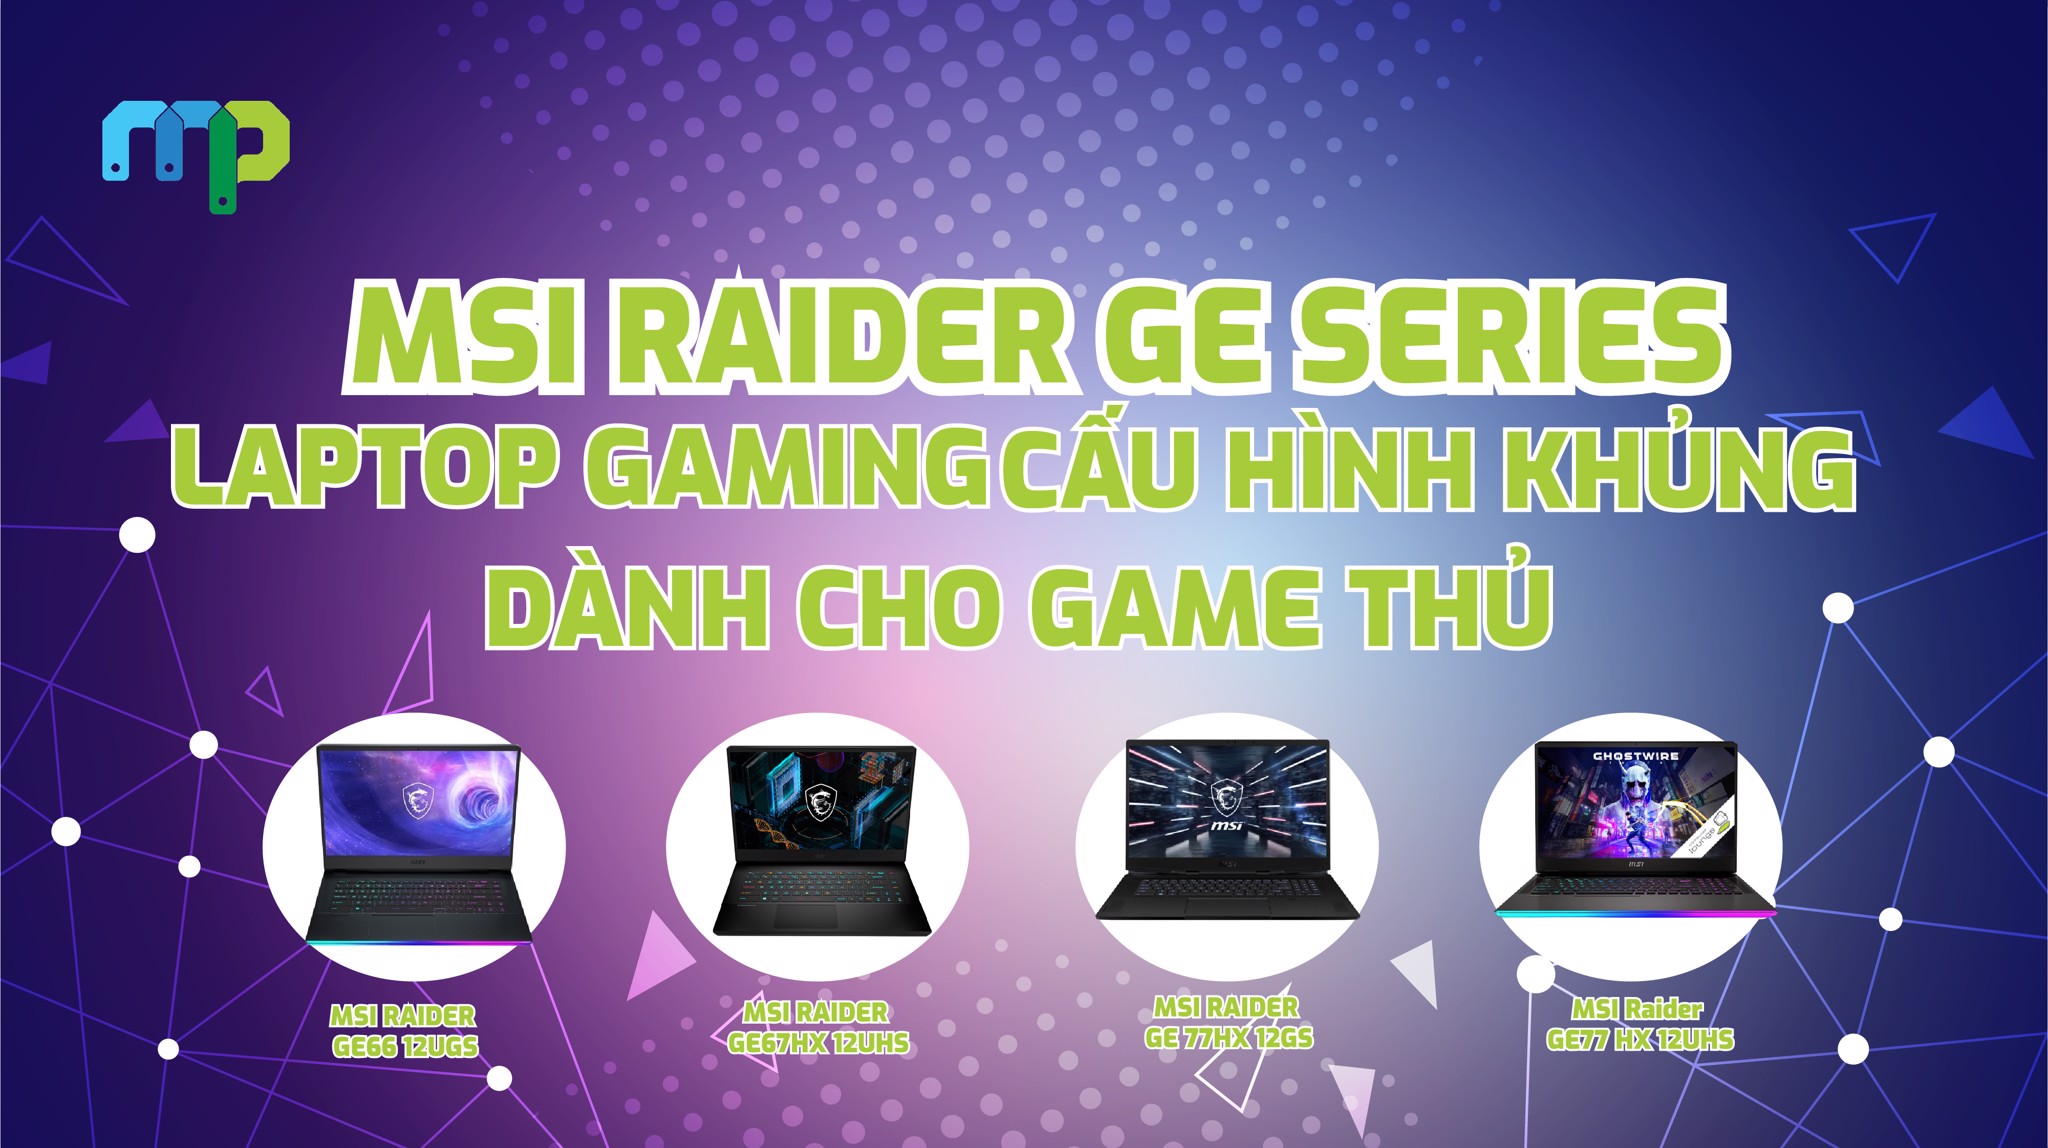 Laptop MSI Gaming GE Raider Laptop Gaming Cấu Hình Khủng Dành Cho Game Thủ